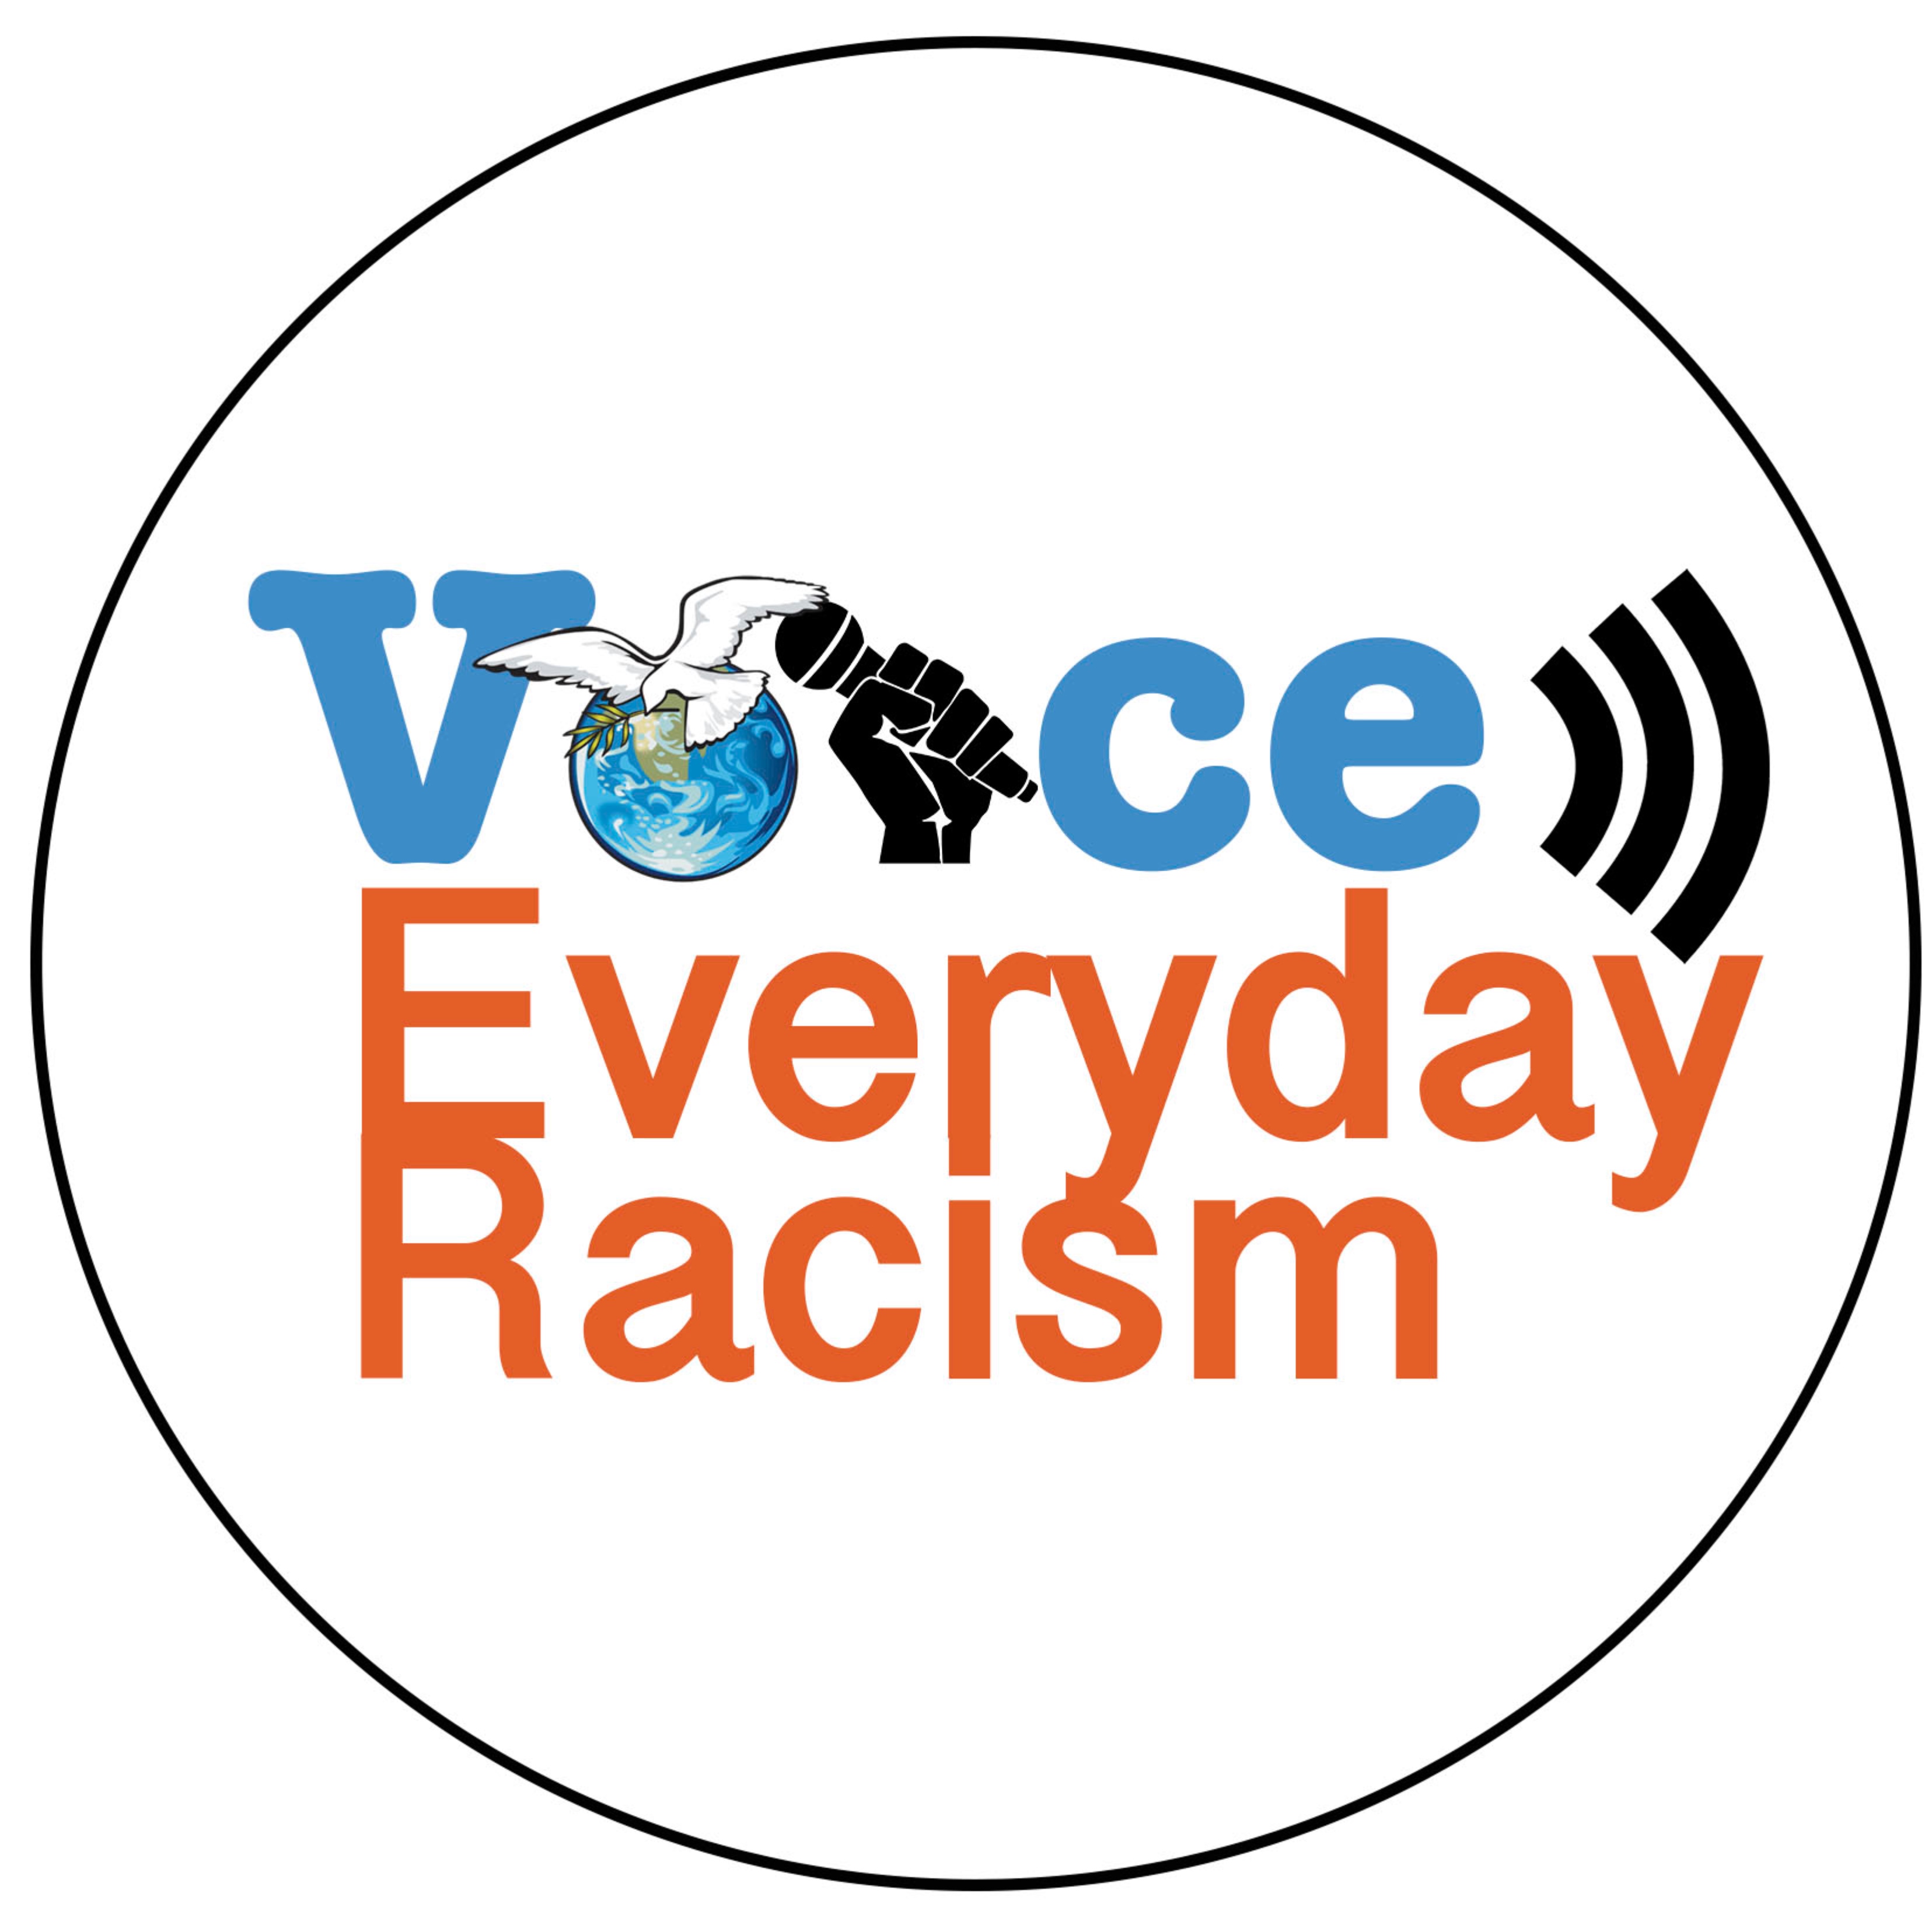 Voice Everyday Racism